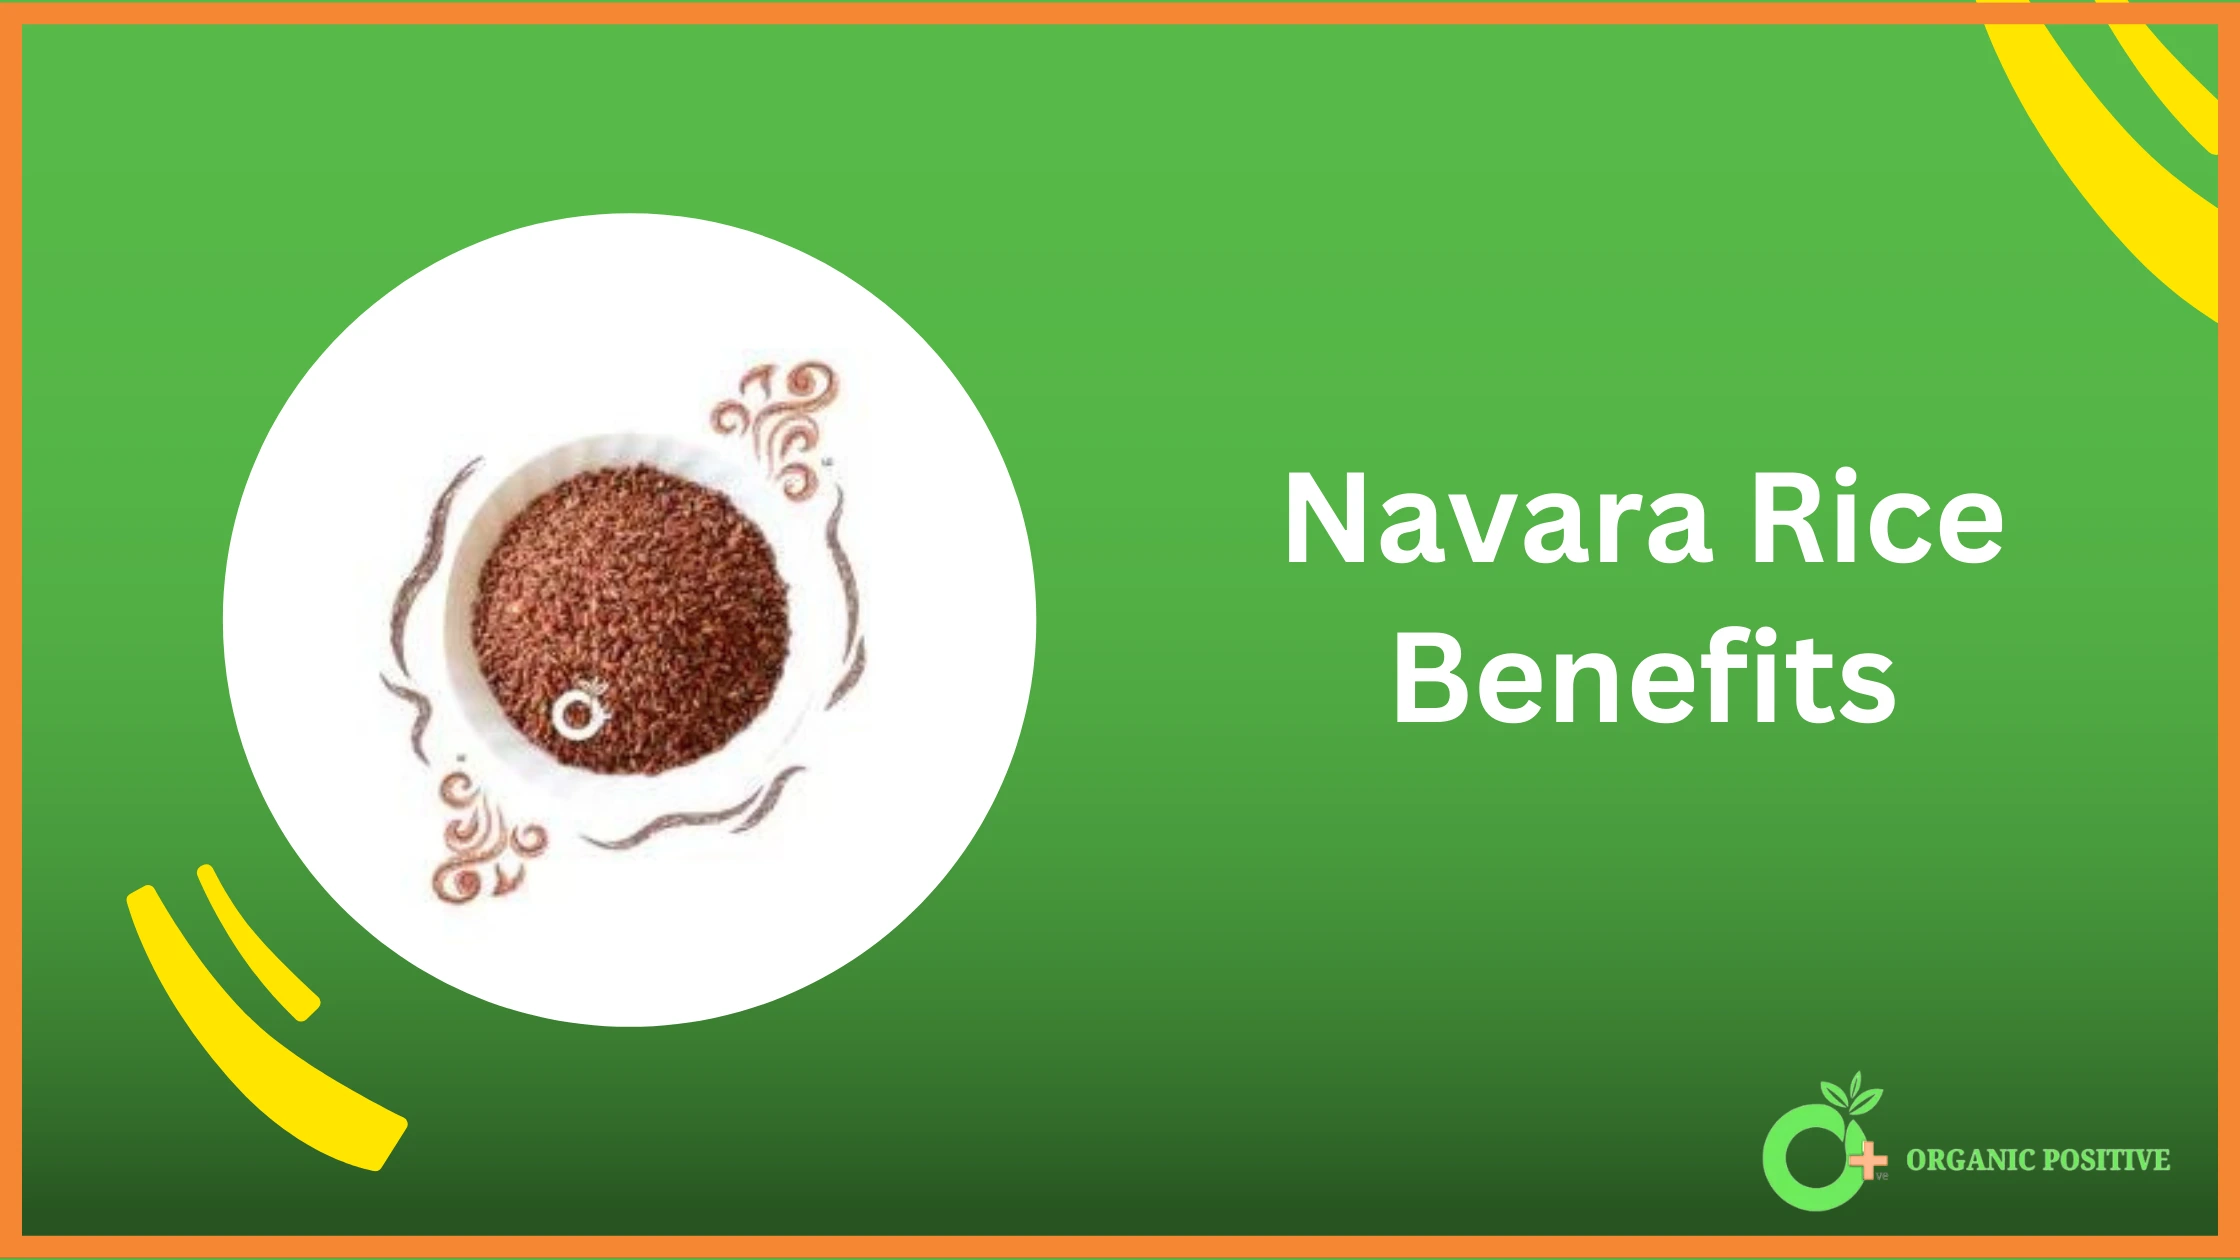 Navara Rice Benefits